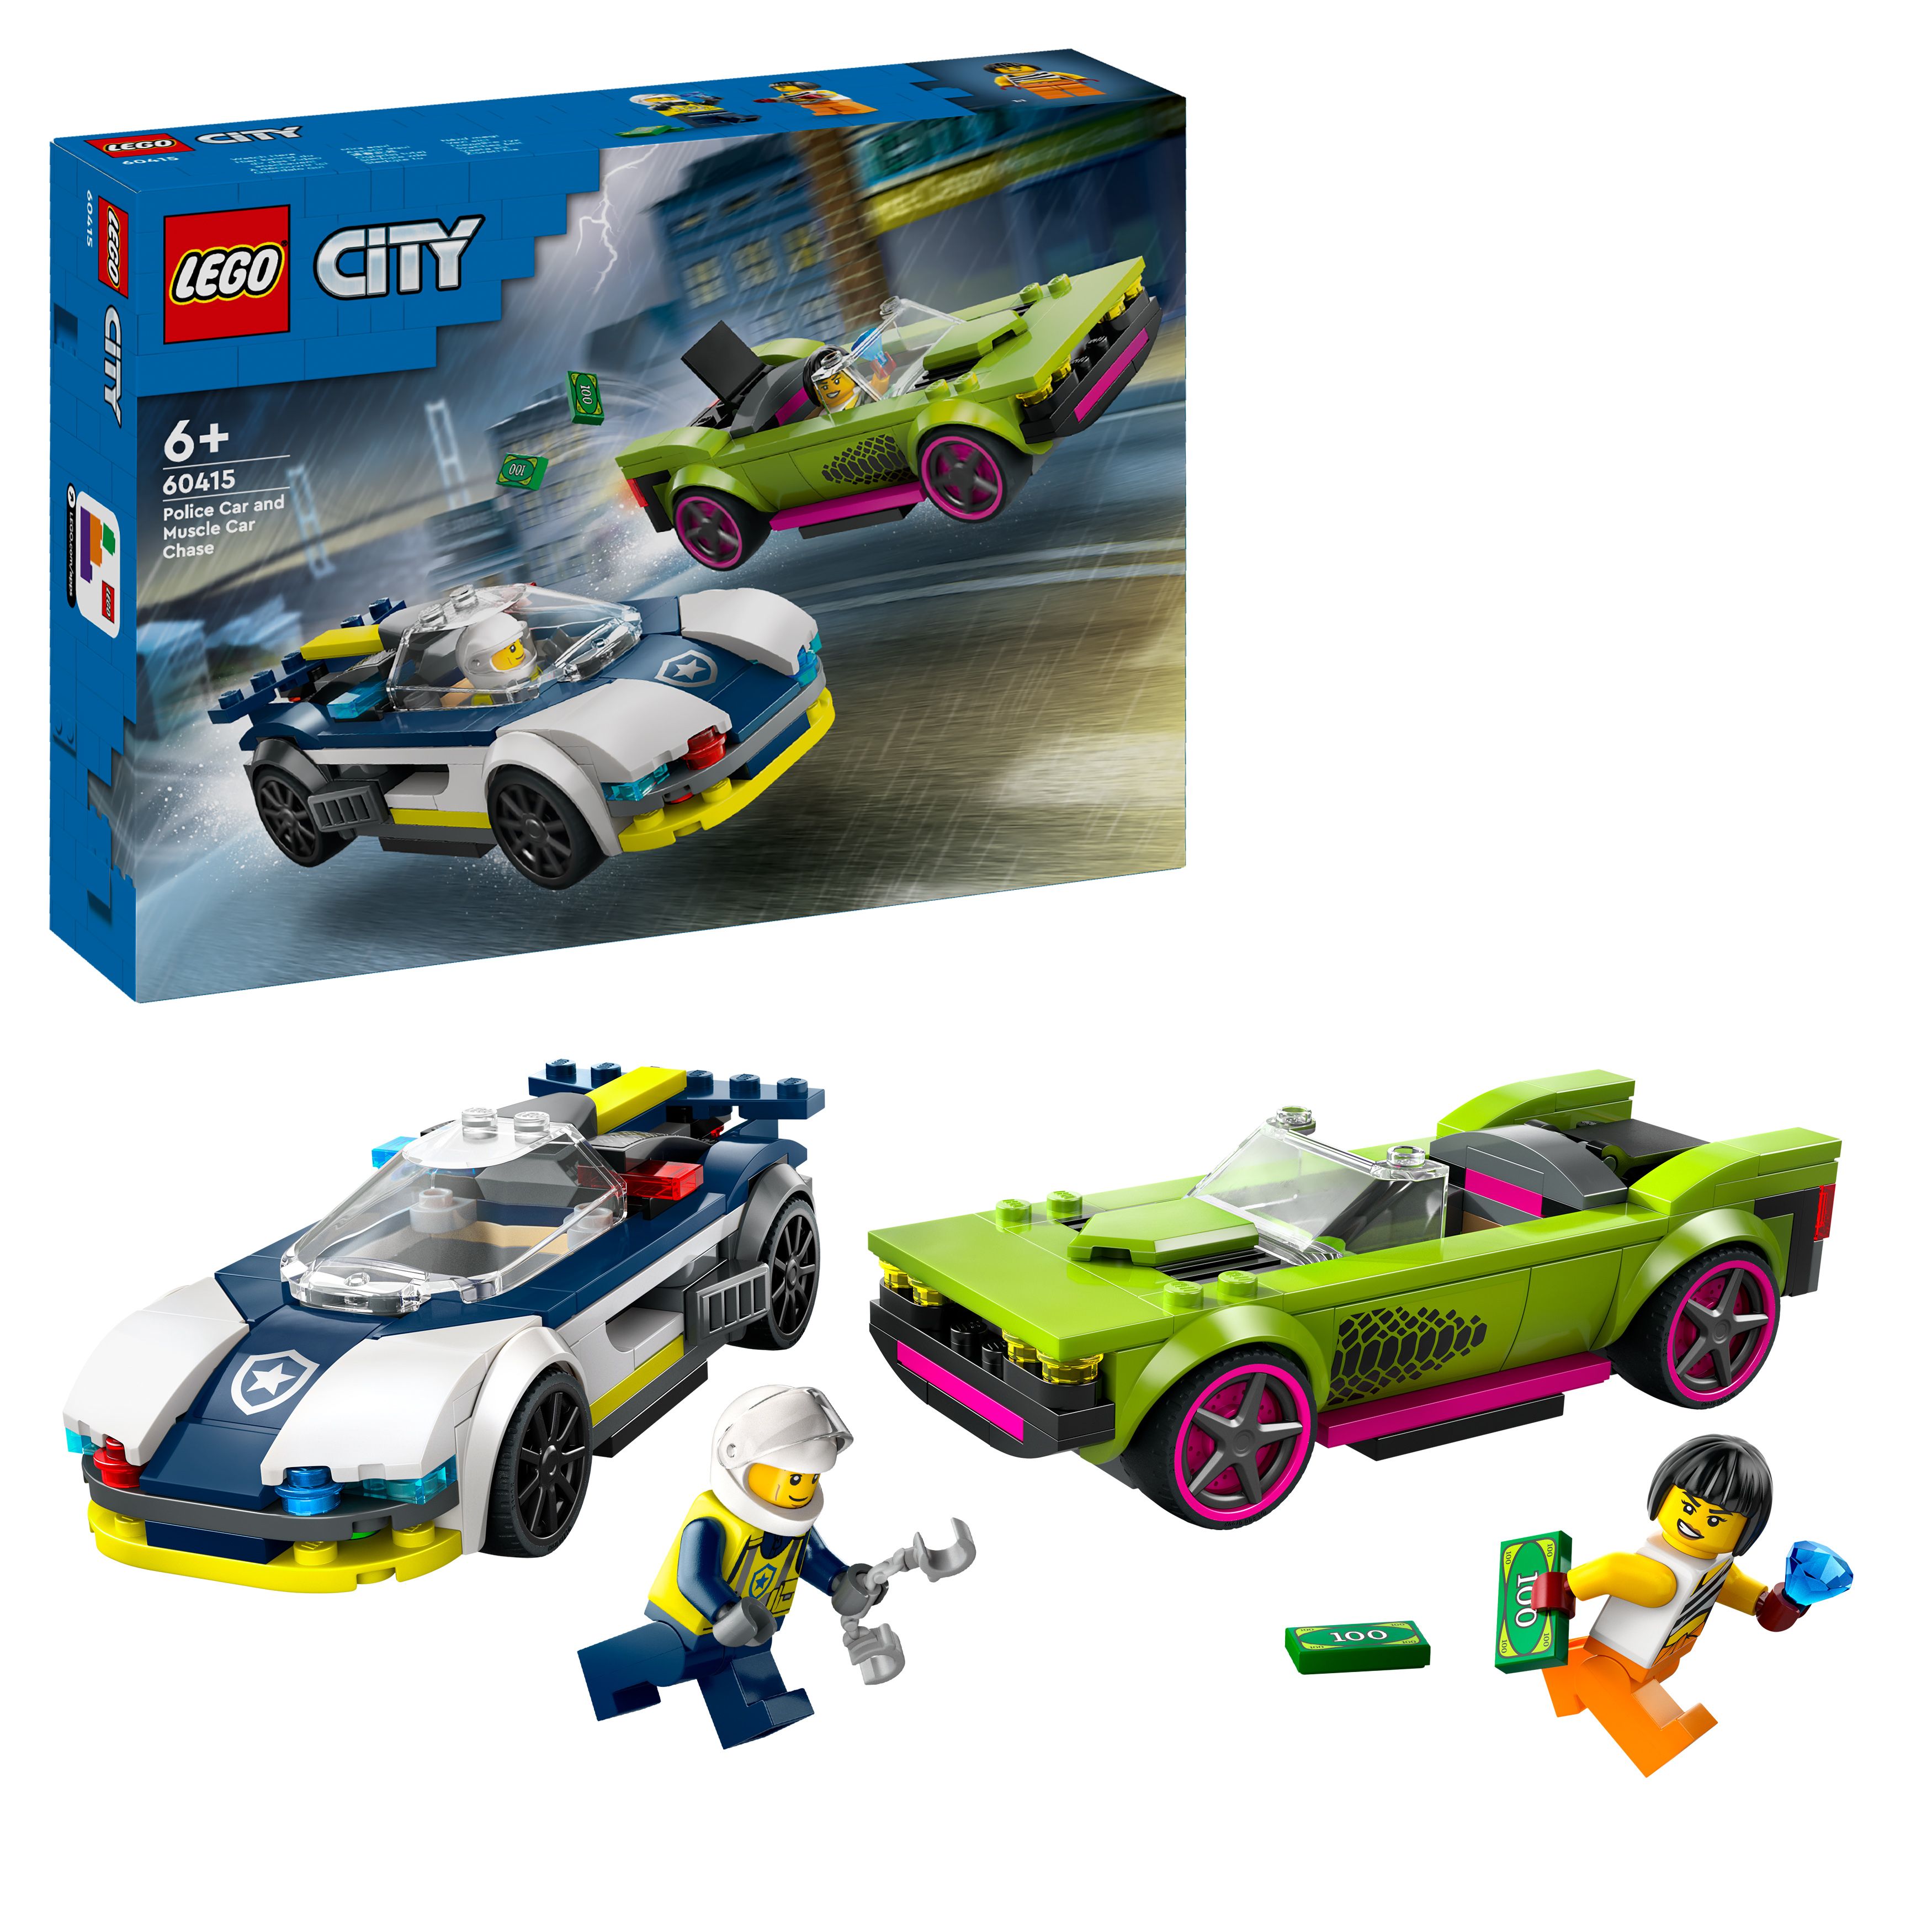 LEGO City - Politibil på muskelbil-jakt (60415) - Leker